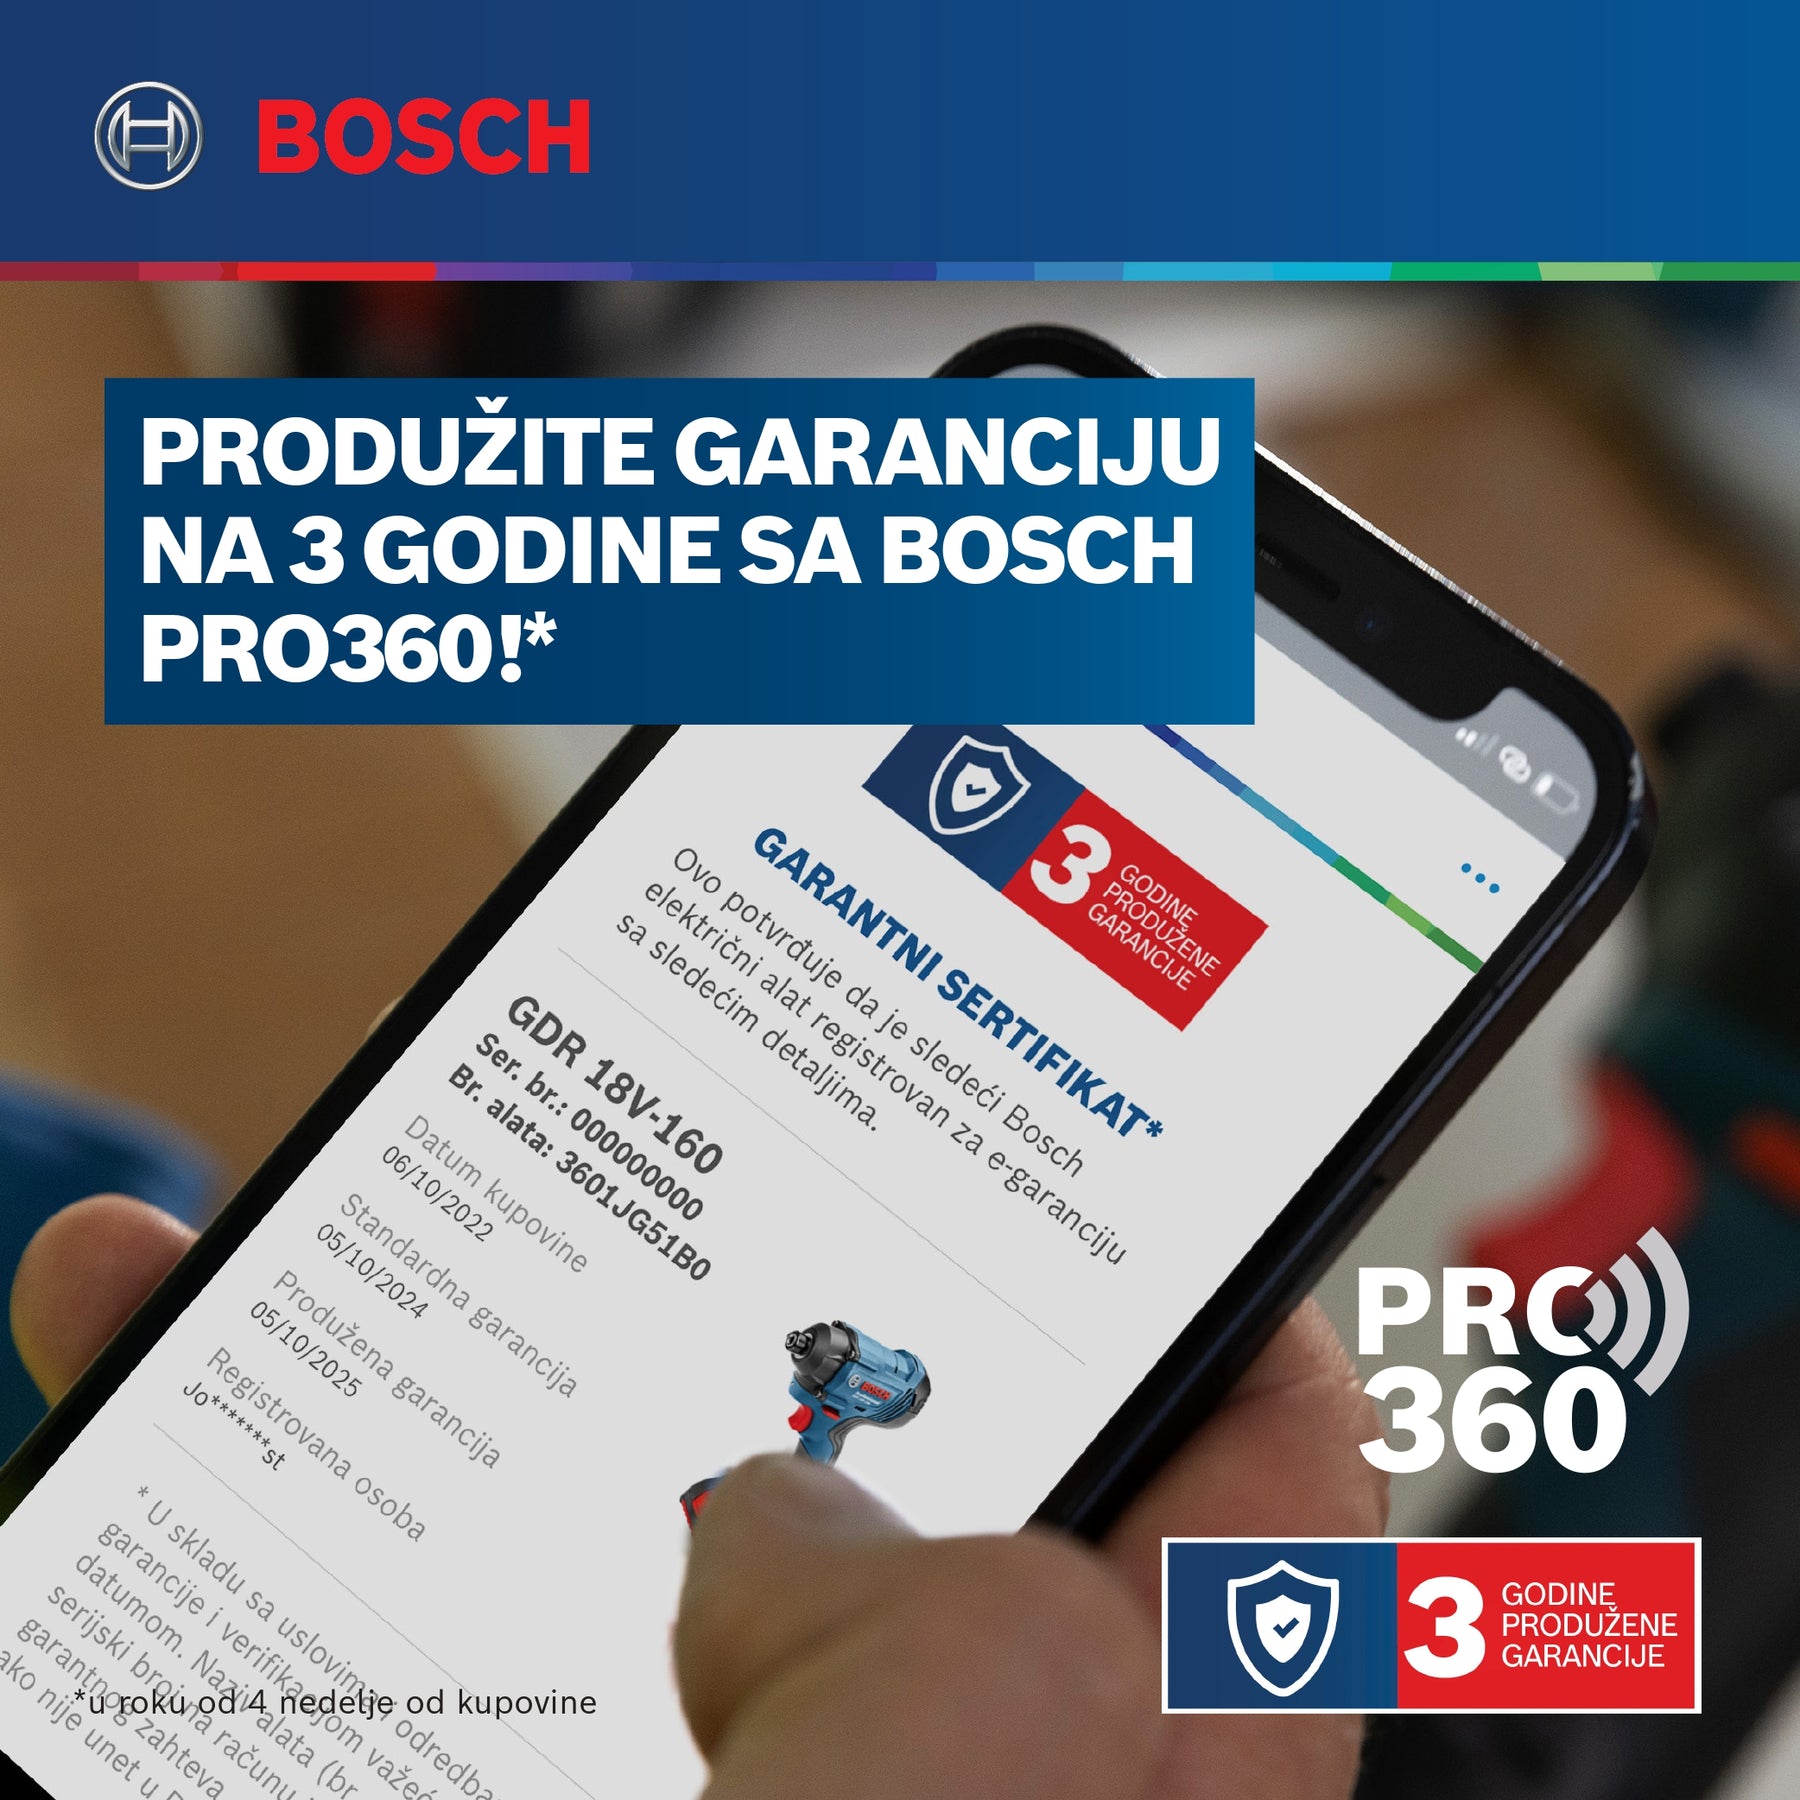 Bosch garancije 3 godine za Bosch plavi alat - Samo u 3 koraka